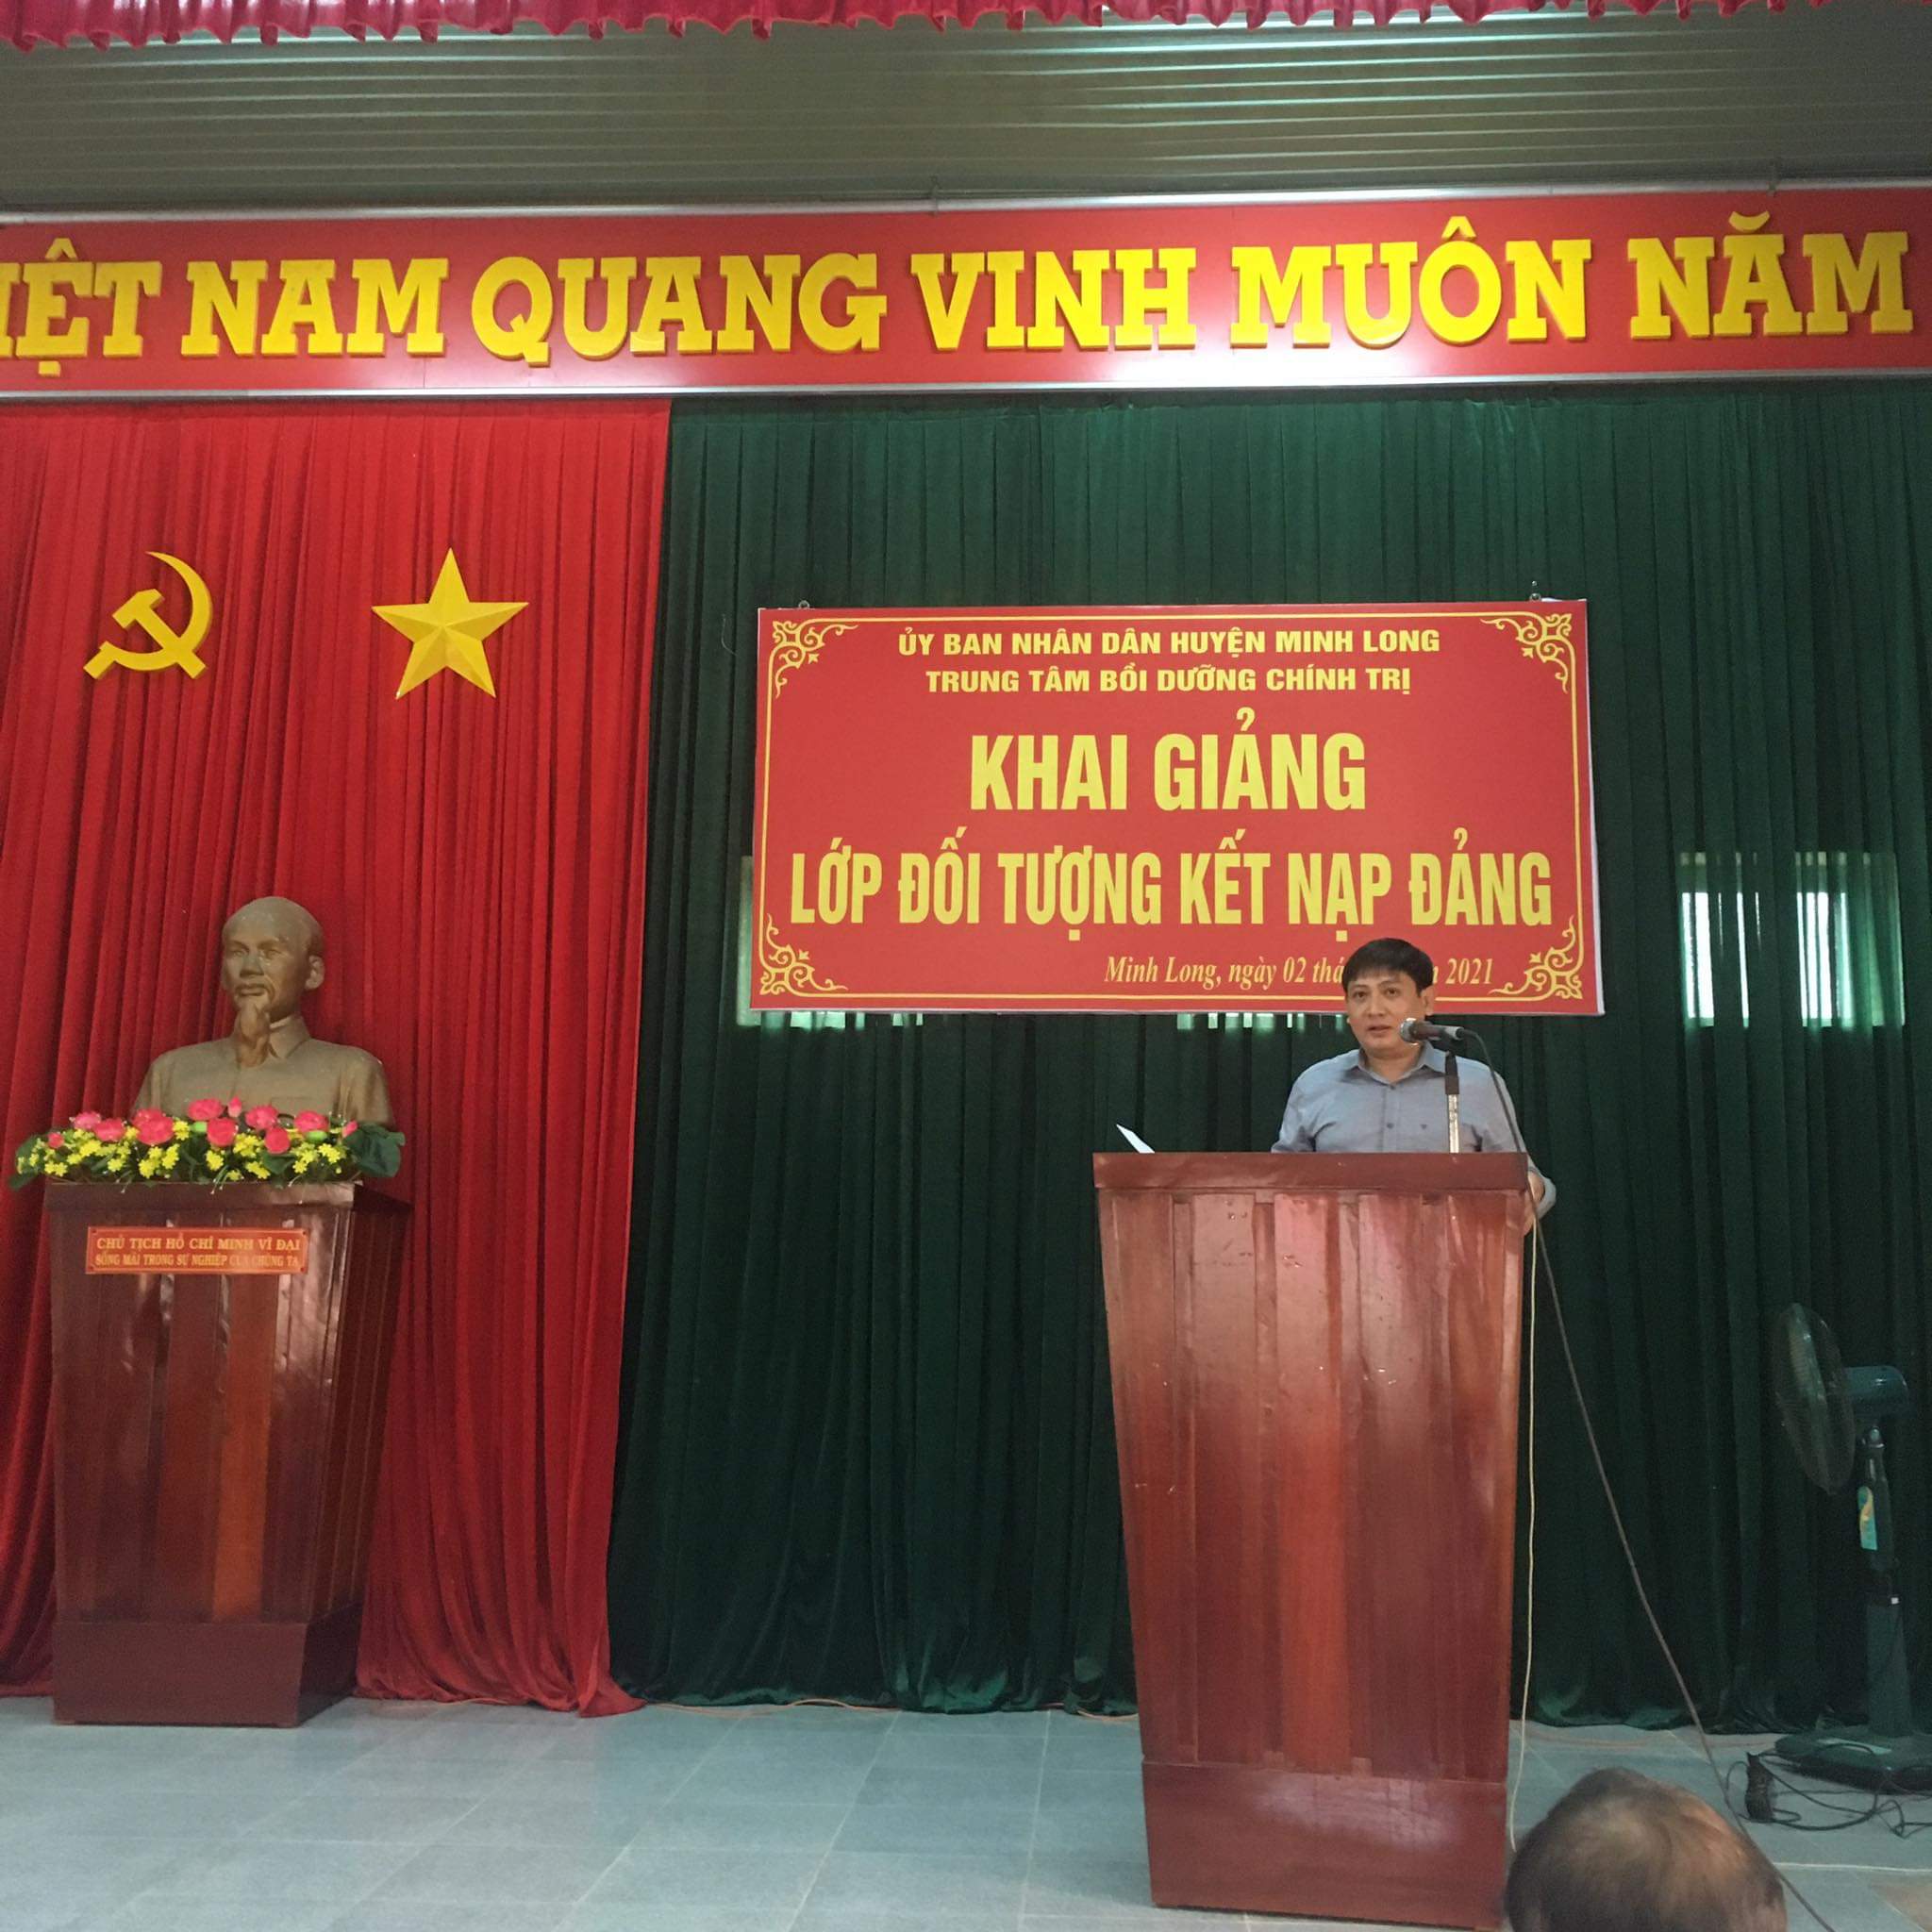 Khai giảng lớp đối tượng kết nạp Đảng viên năm 2021 tại huyện Minh Long